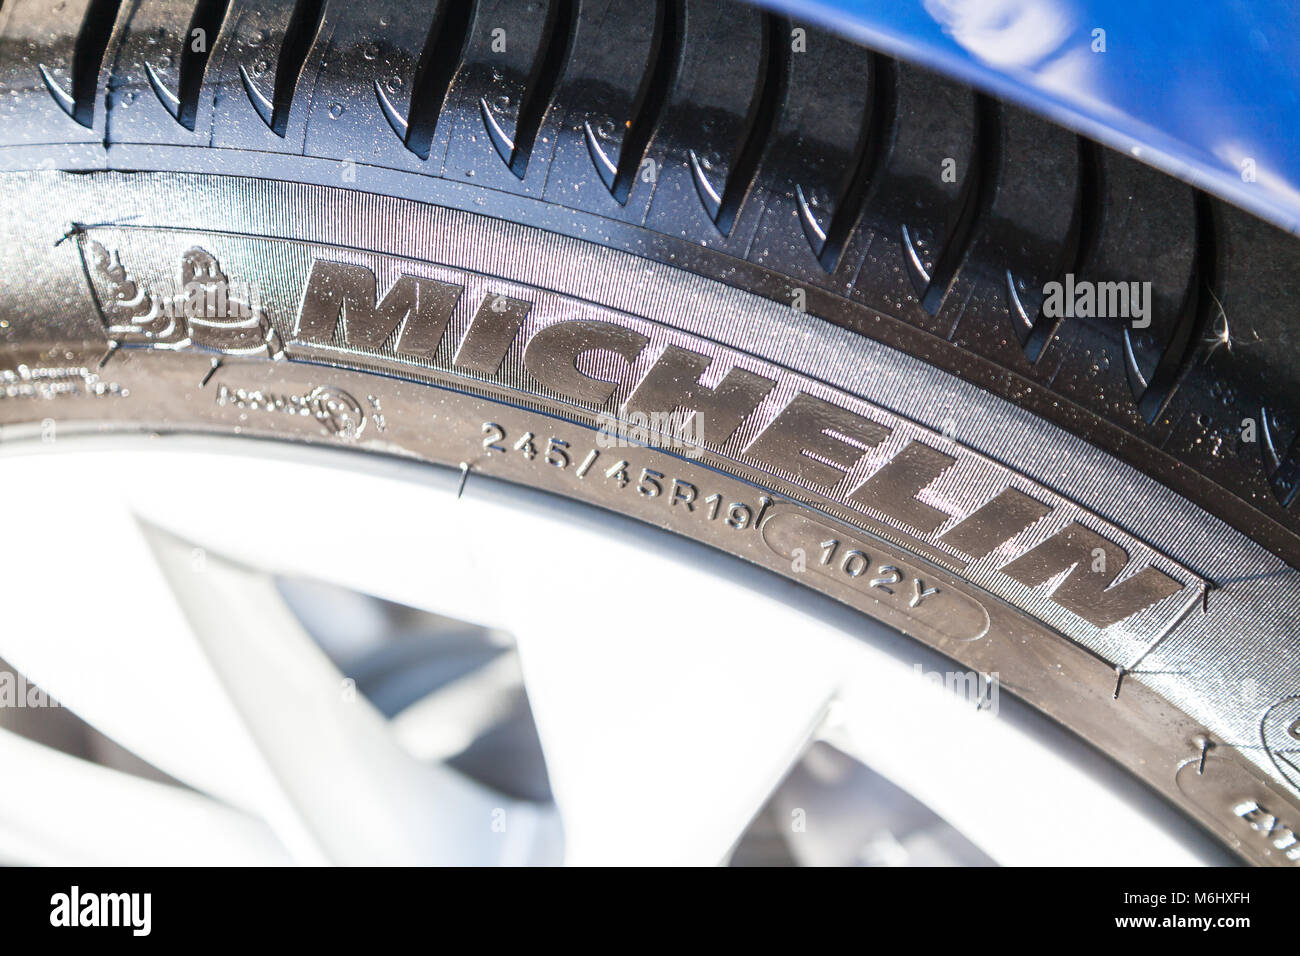 FUERTH / ALLEMAGNE - mars 4, 2018 : Michelin logo sur un pneu. Michelin est  un fabricant français de pneumatiques basé à Clermont-Ferrand dans la  région d'Auvergne Photo Stock - Alamy